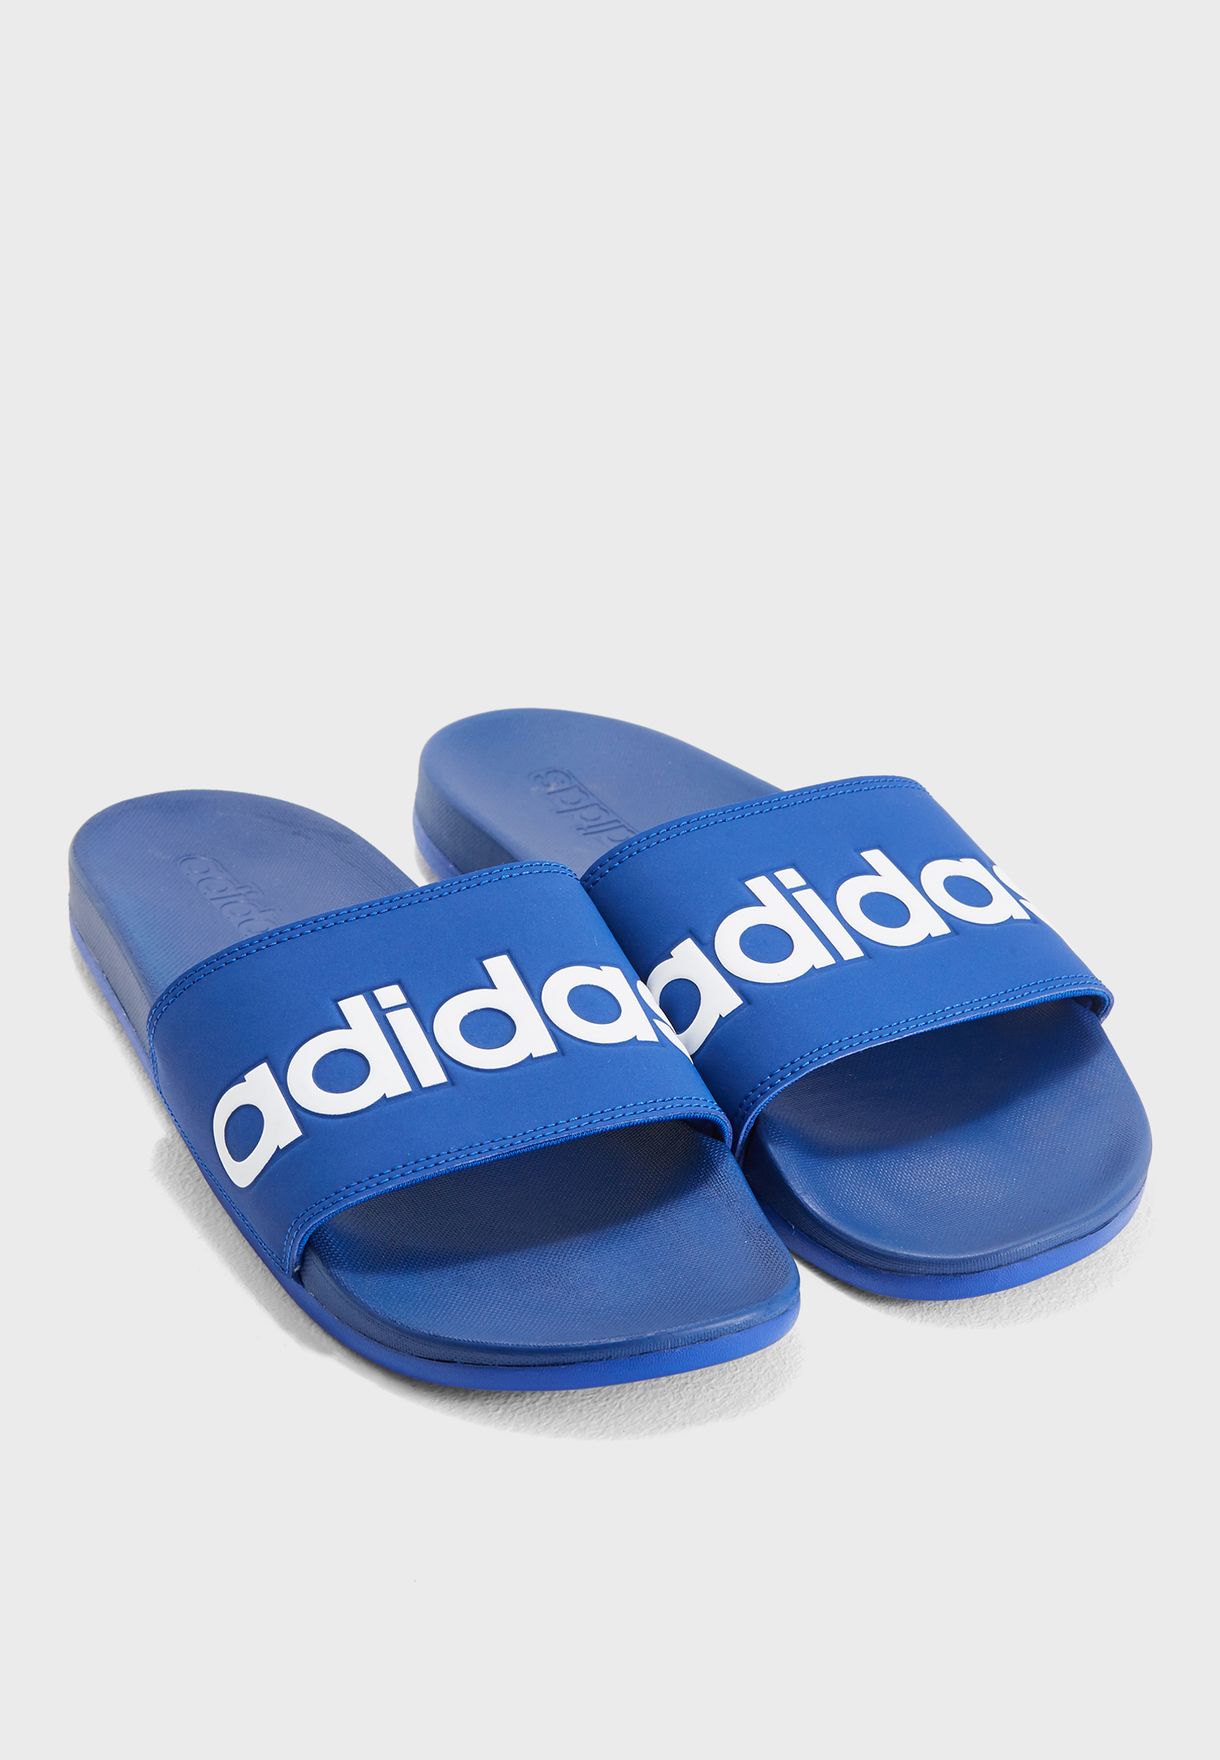 adidas adilette comfort blue